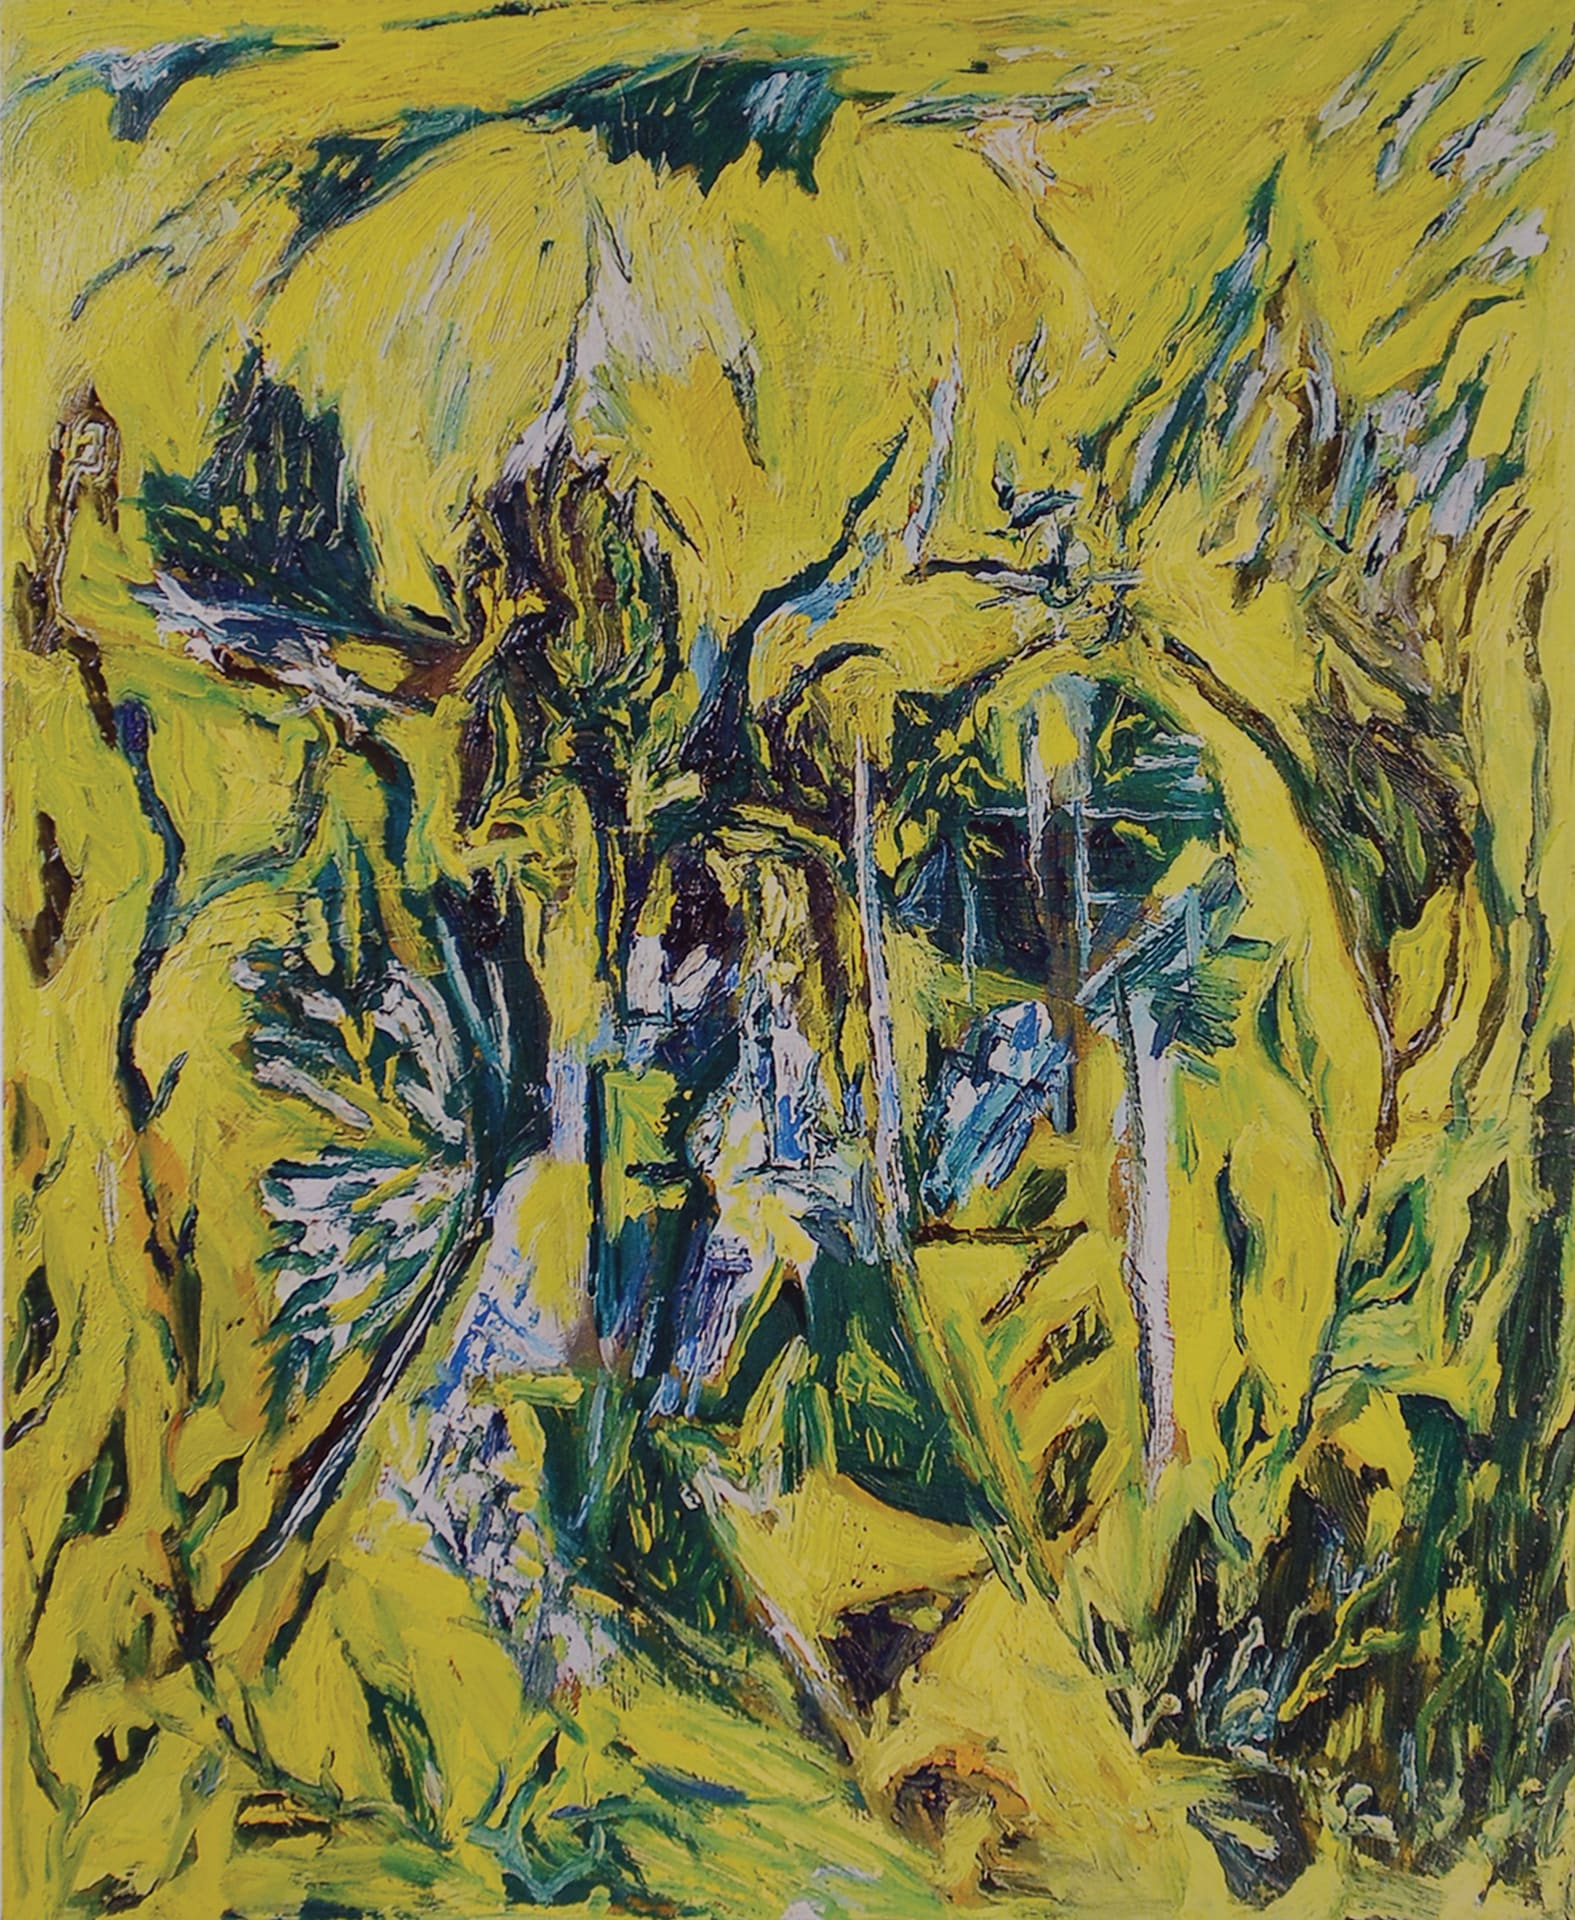 Paesaggio giallo - 1964 - olio su tela - cm 60 x 50 - Collezione privata, Milano